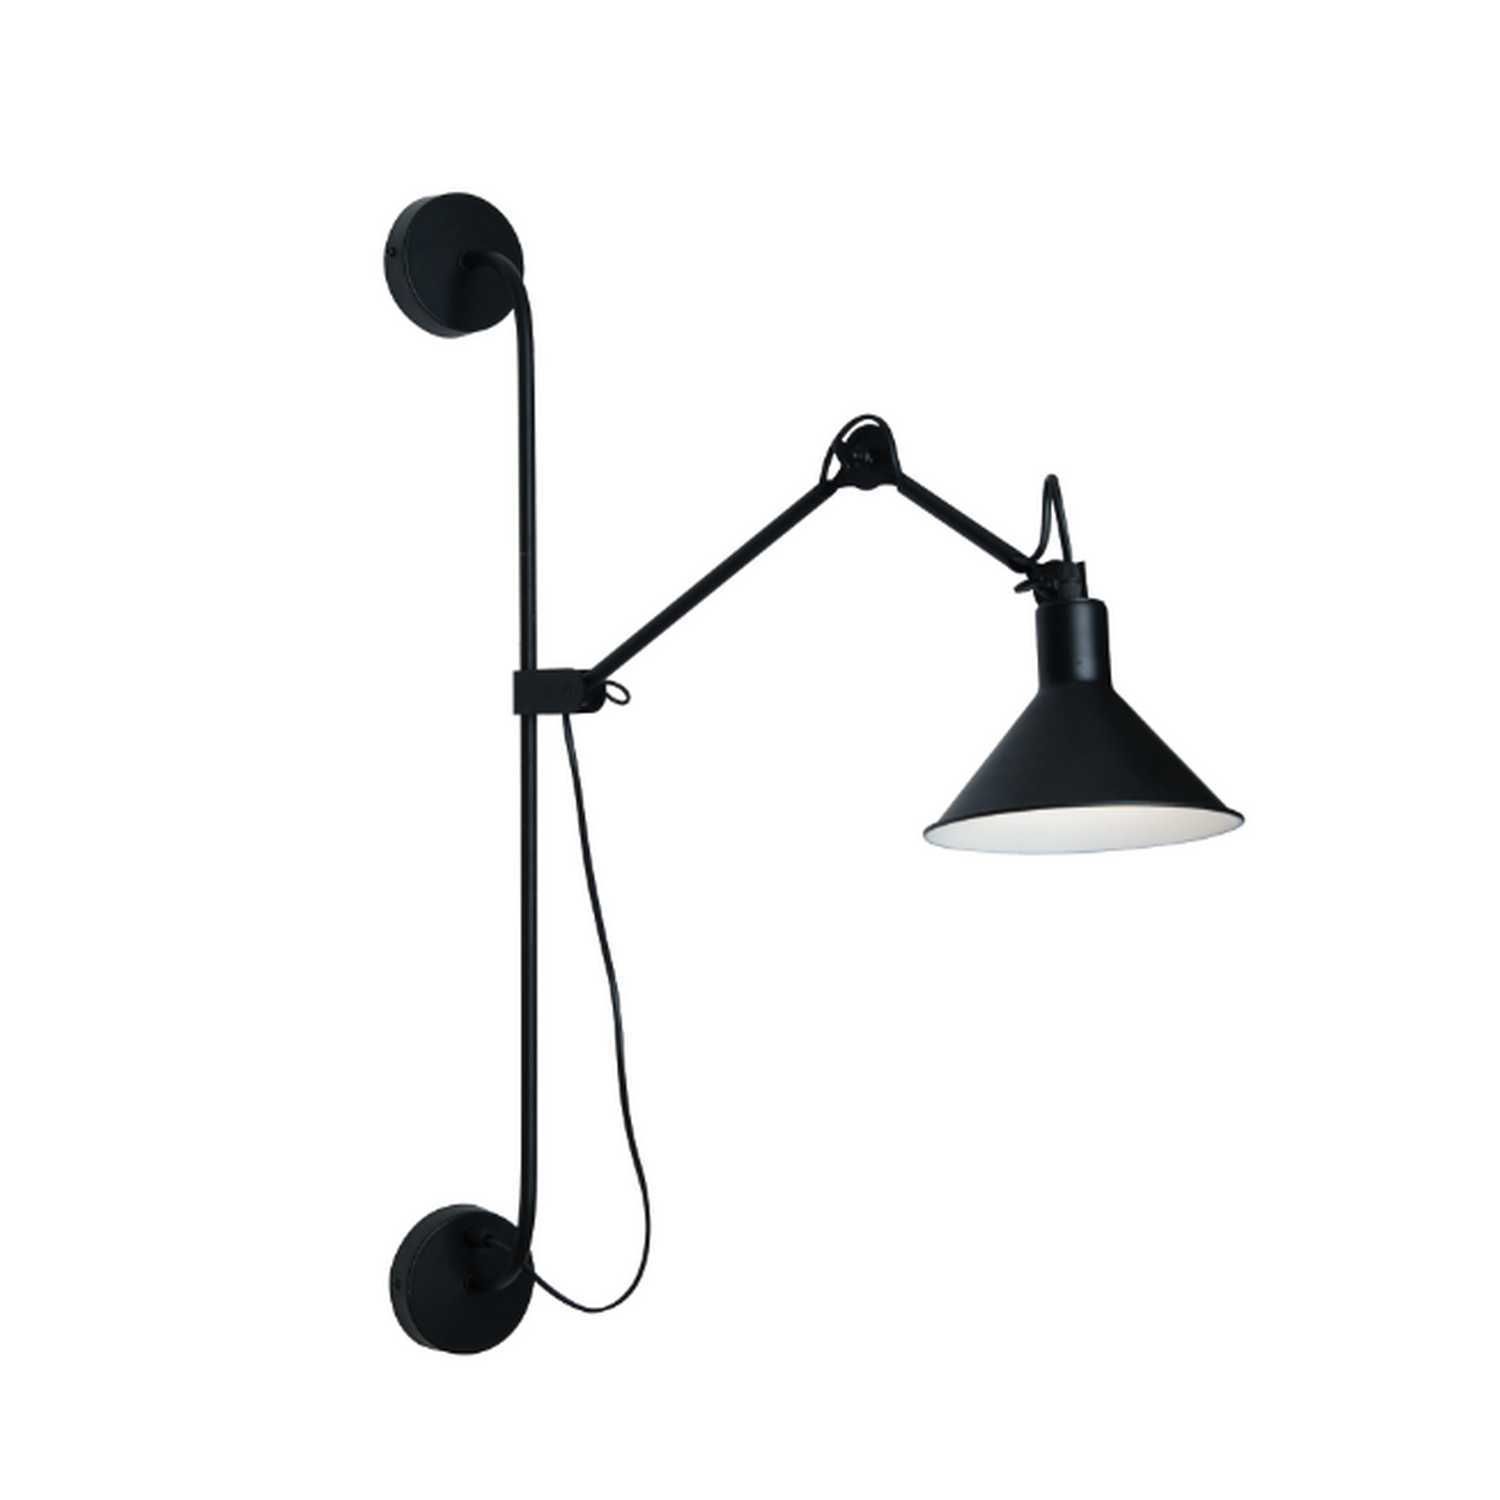 Nástěnné svítidlo lampa 1578 - 1578 - Zambelis - A-LIGHT s.r.o.